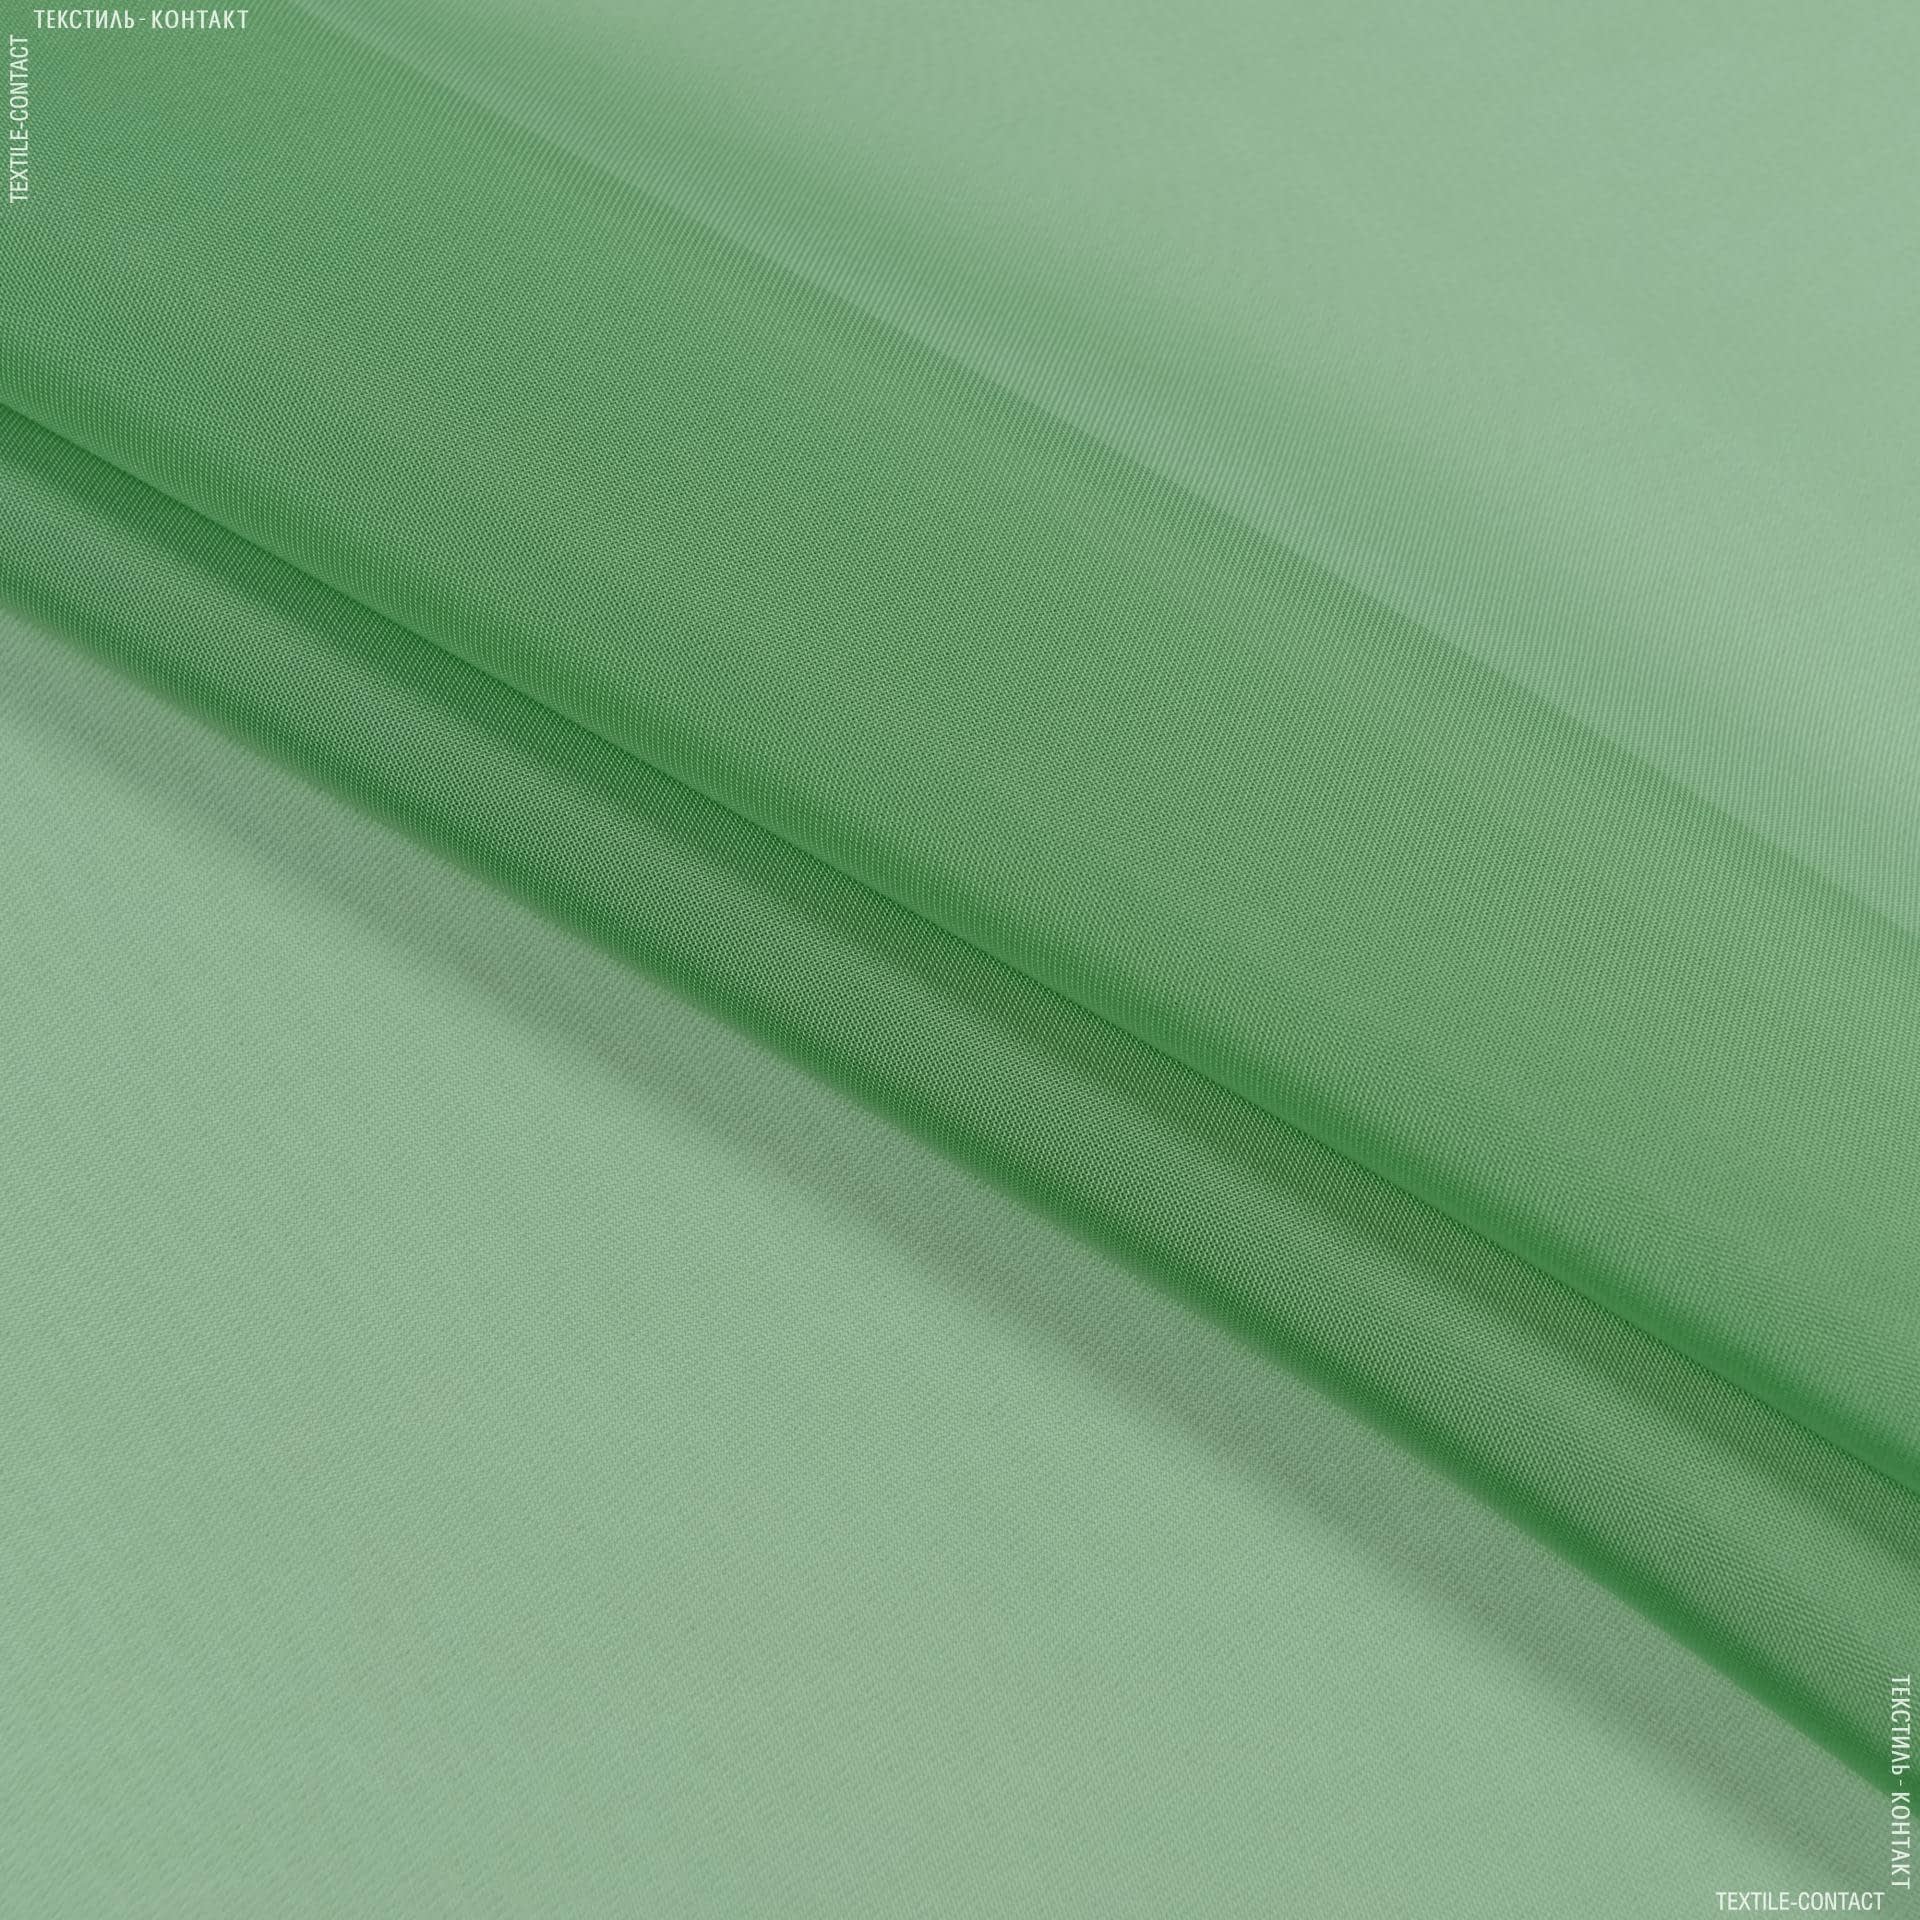 Тканини гардинні тканини - Тюль вуаль колір зелена трава